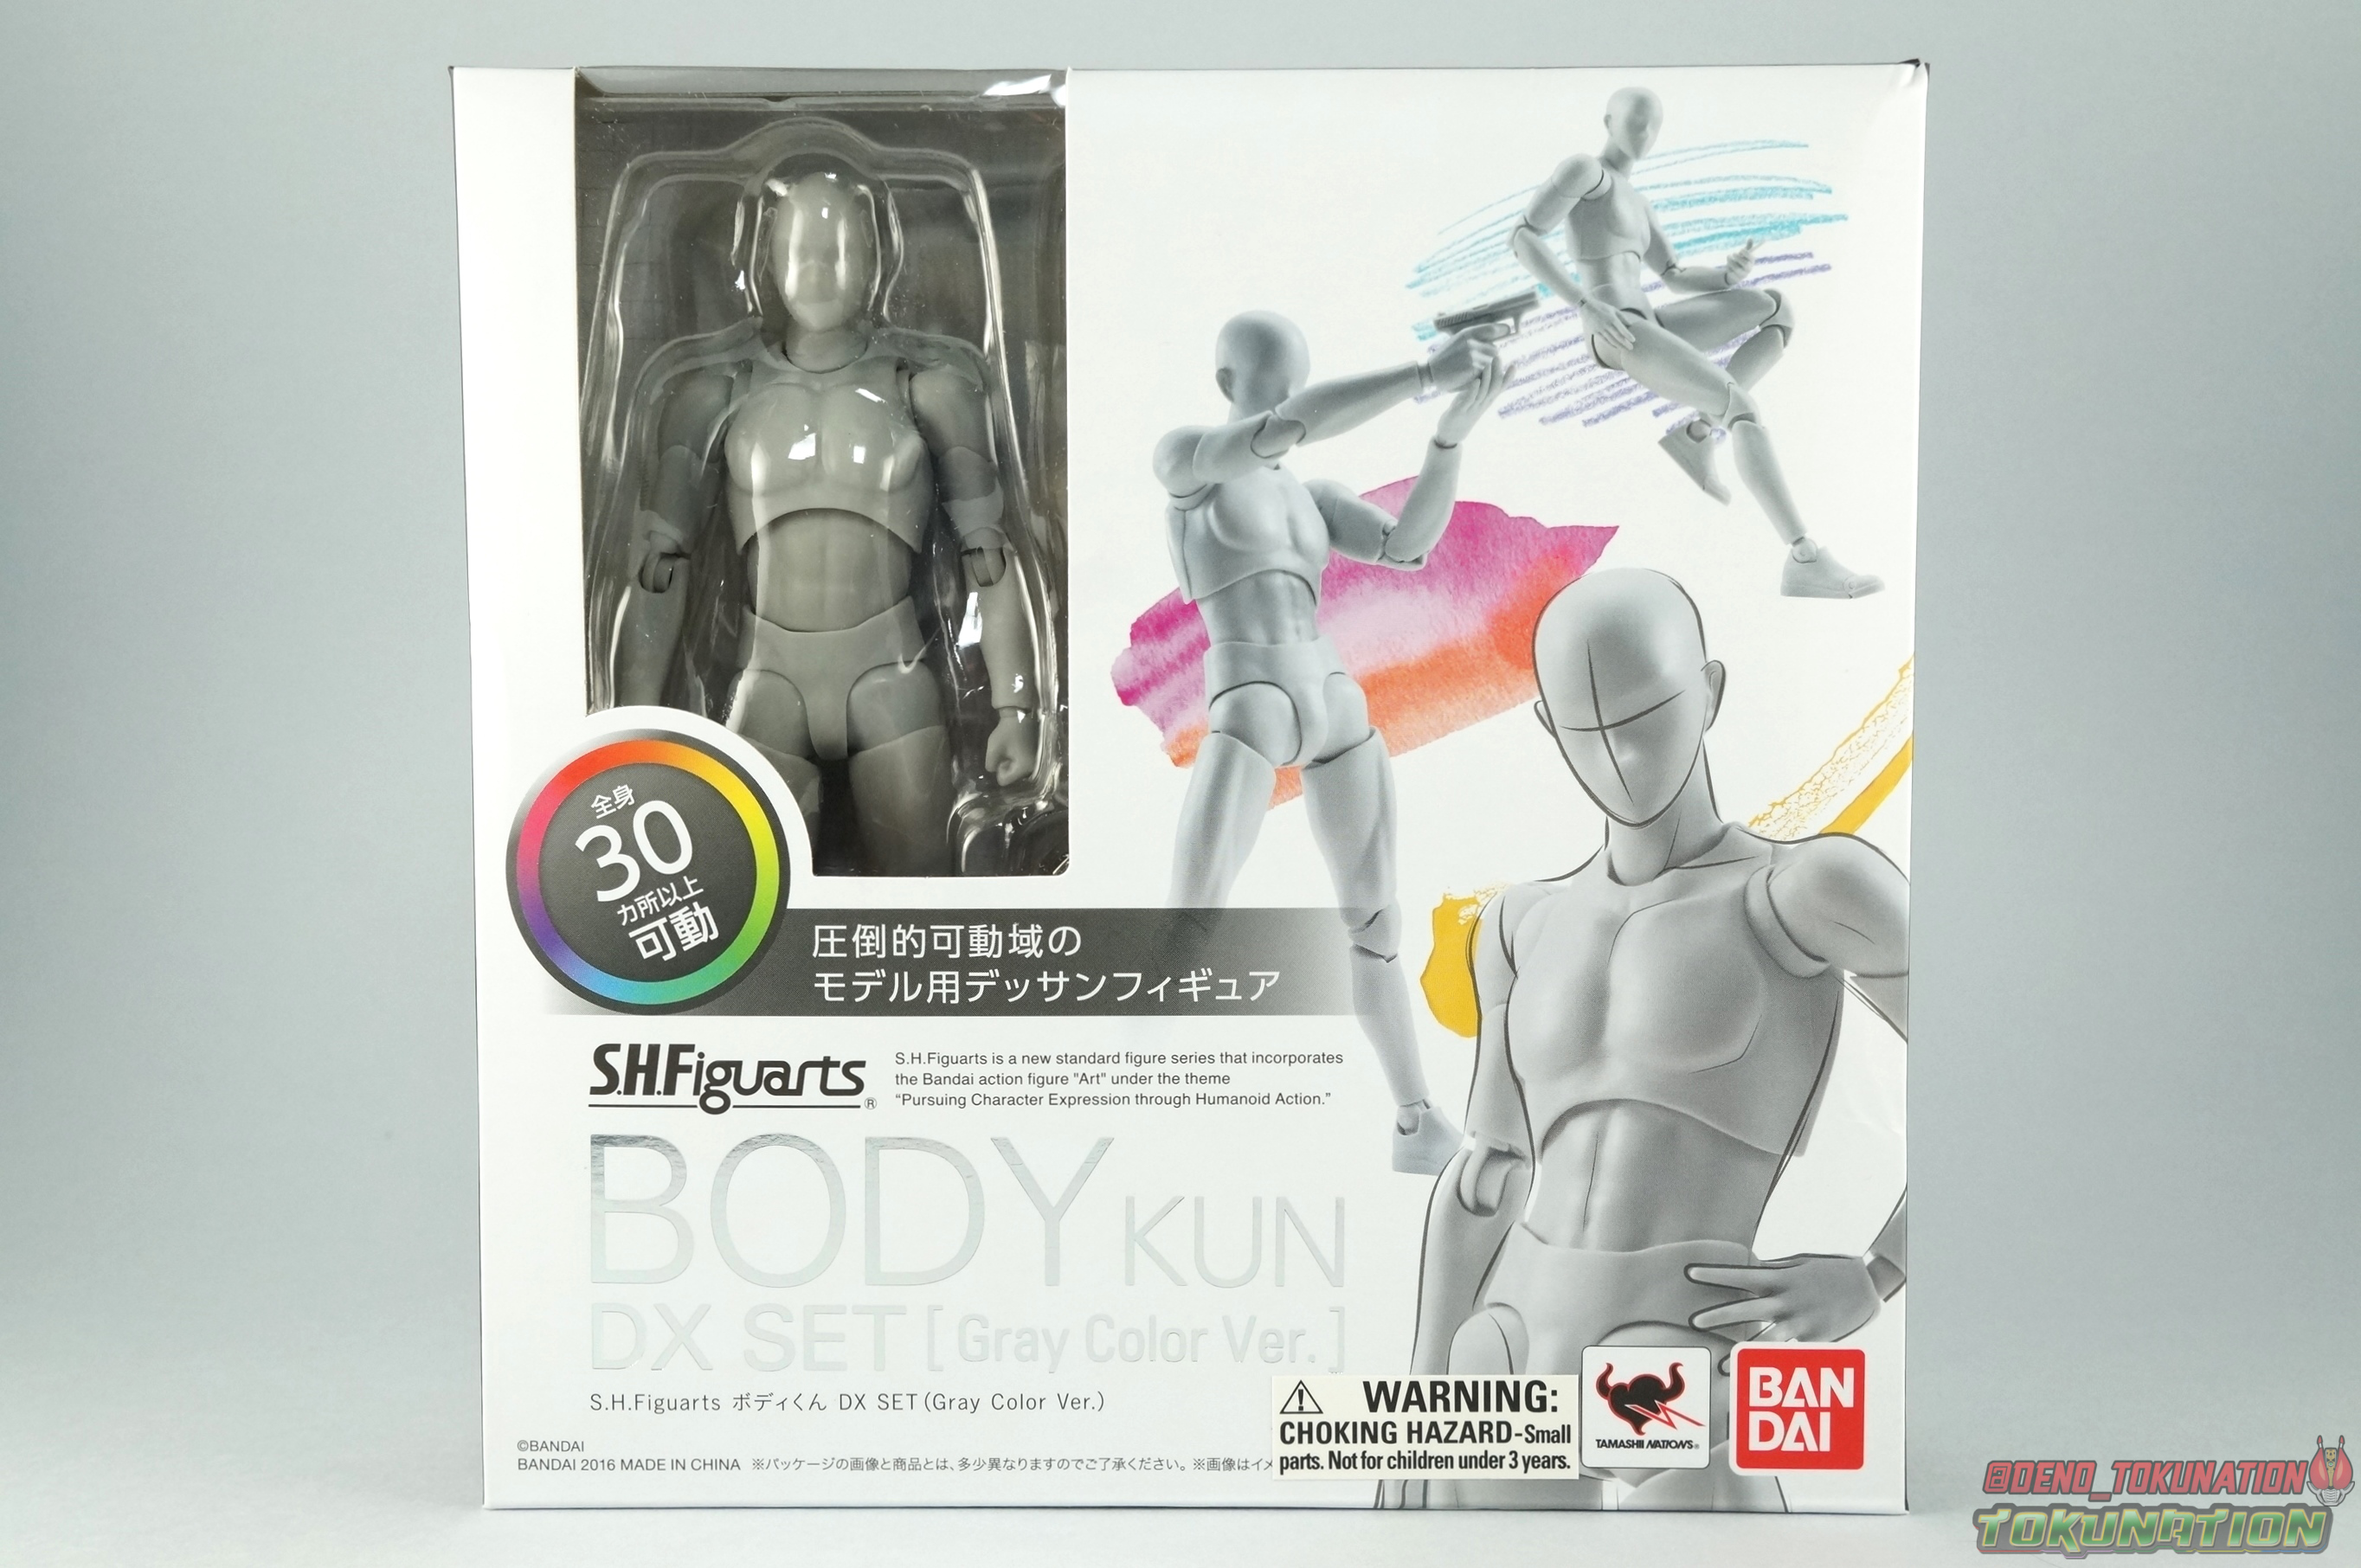 S.H.Figuarts Body-kun -School Life- Edition DX SET (Gray Color Ver